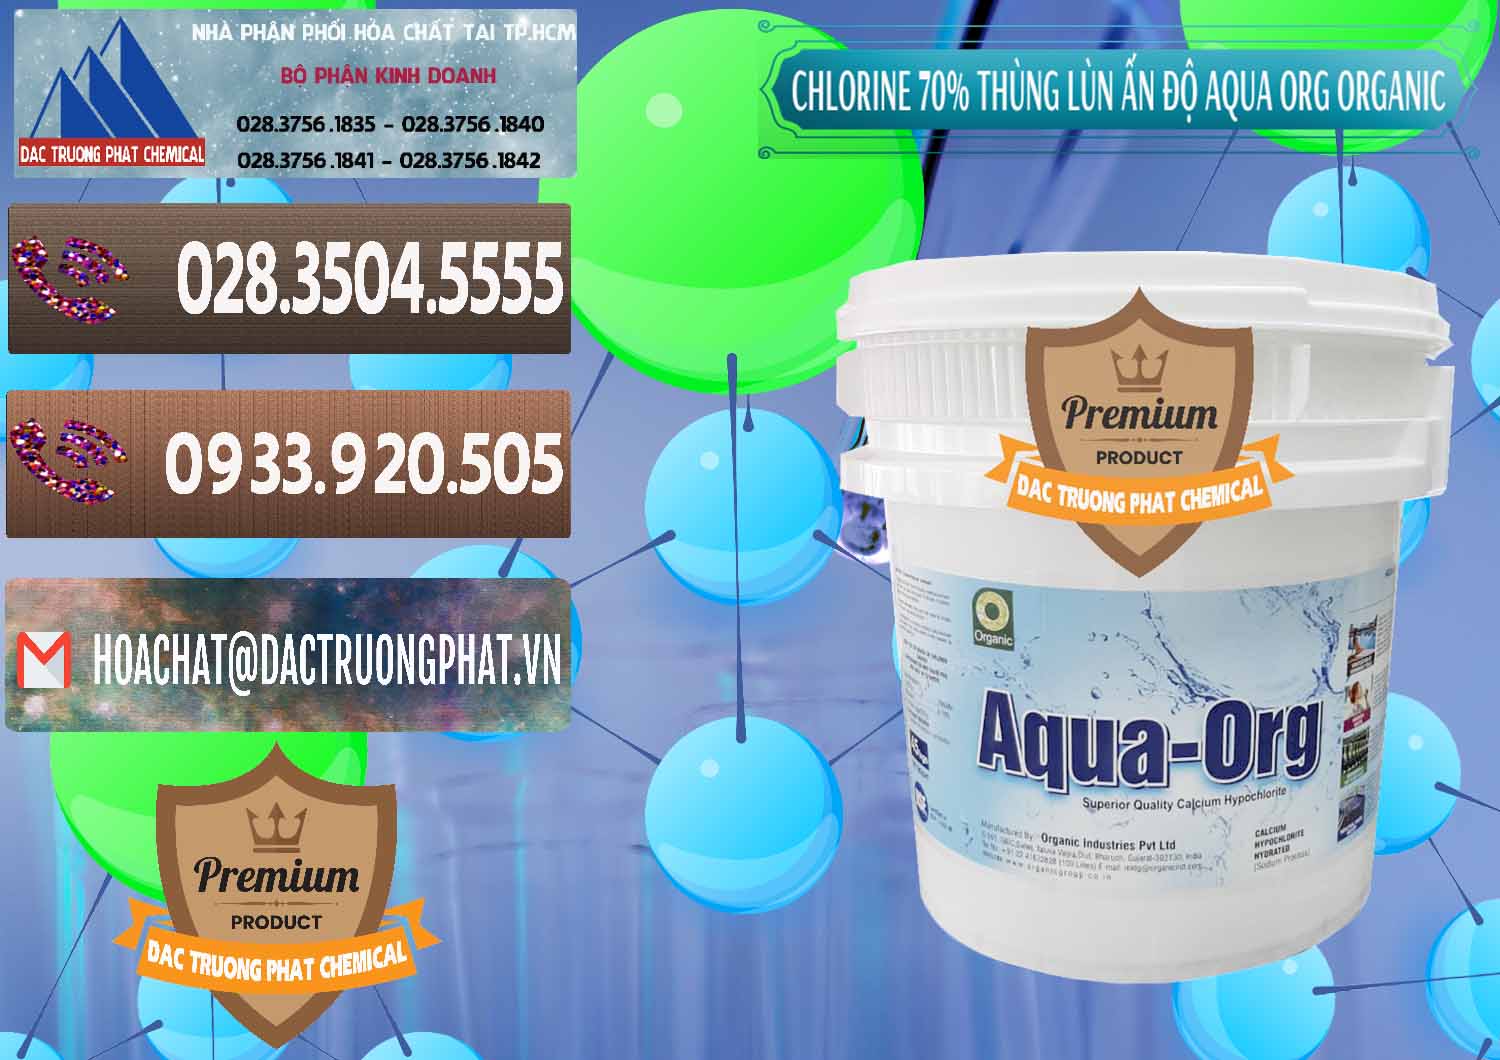 Cty chuyên cung cấp ( bán ) Chlorine – Clorin 70% Thùng Lùn Ấn Độ Aqua ORG Organic India - 0212 - Công ty cung cấp - phân phối hóa chất tại TP.HCM - hoachatviet.net